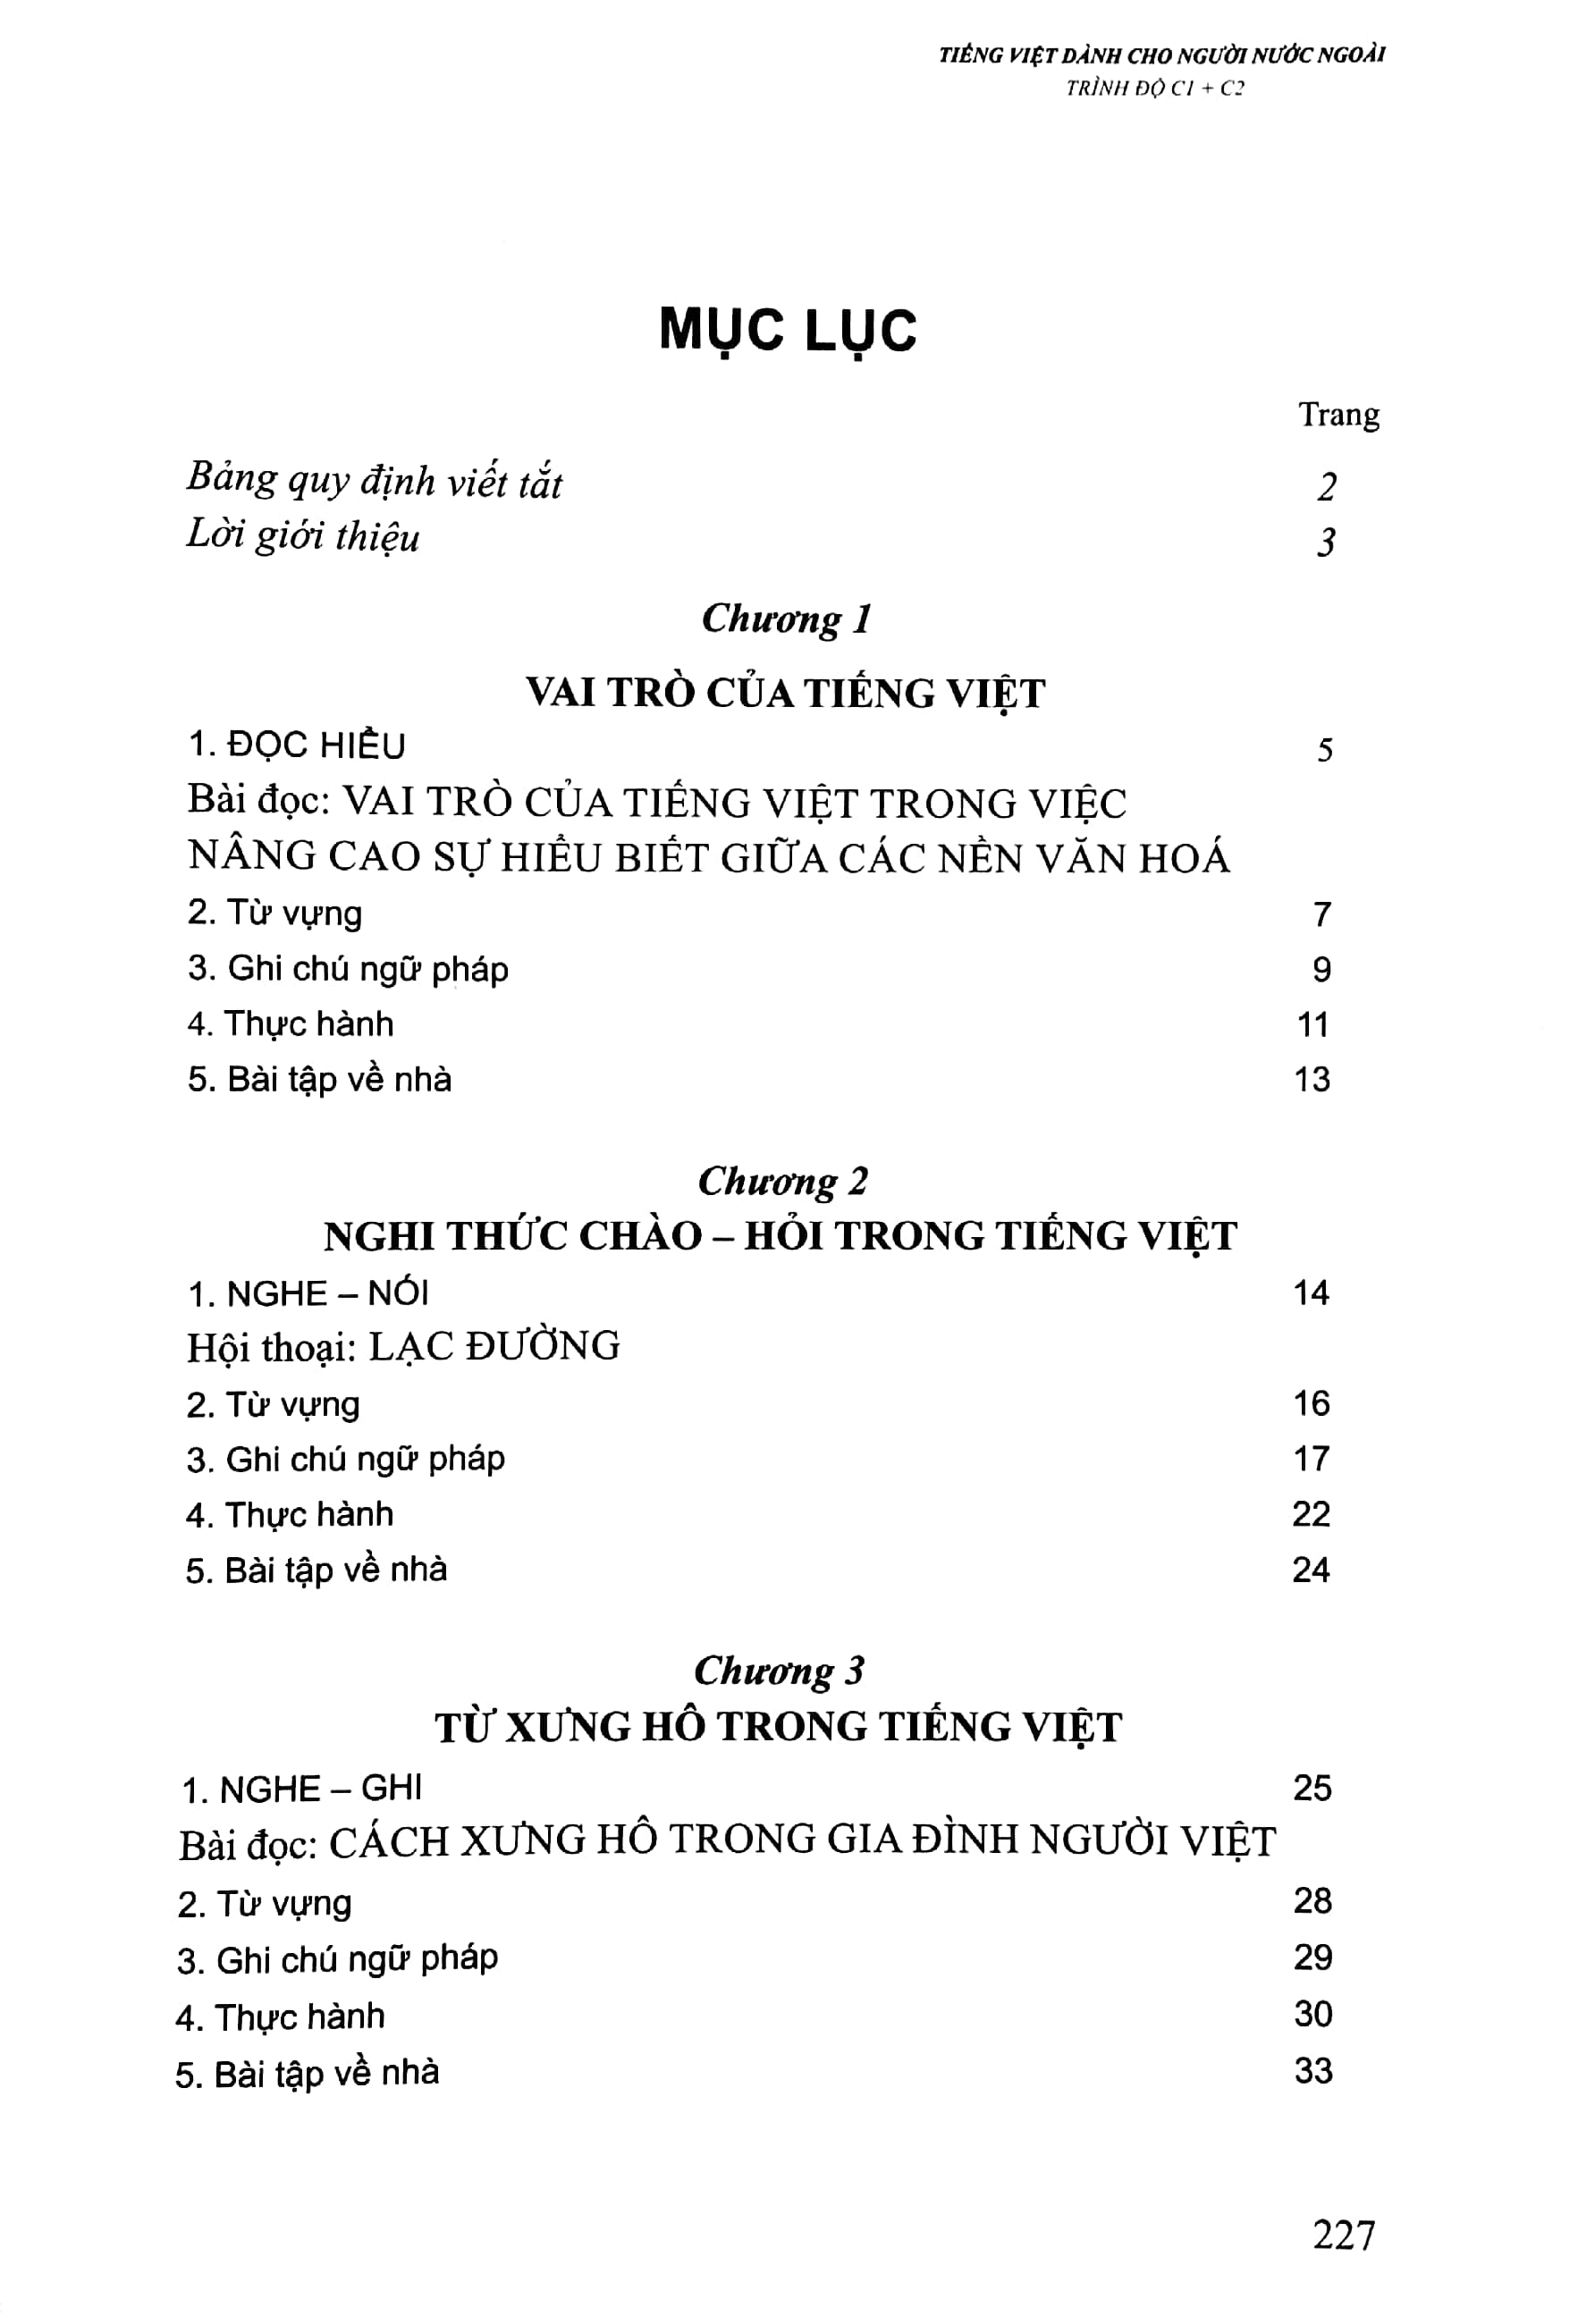 Tiếng Việt Dành Cho Người Nước Ngoài - Trình Độ C1C2 PDF